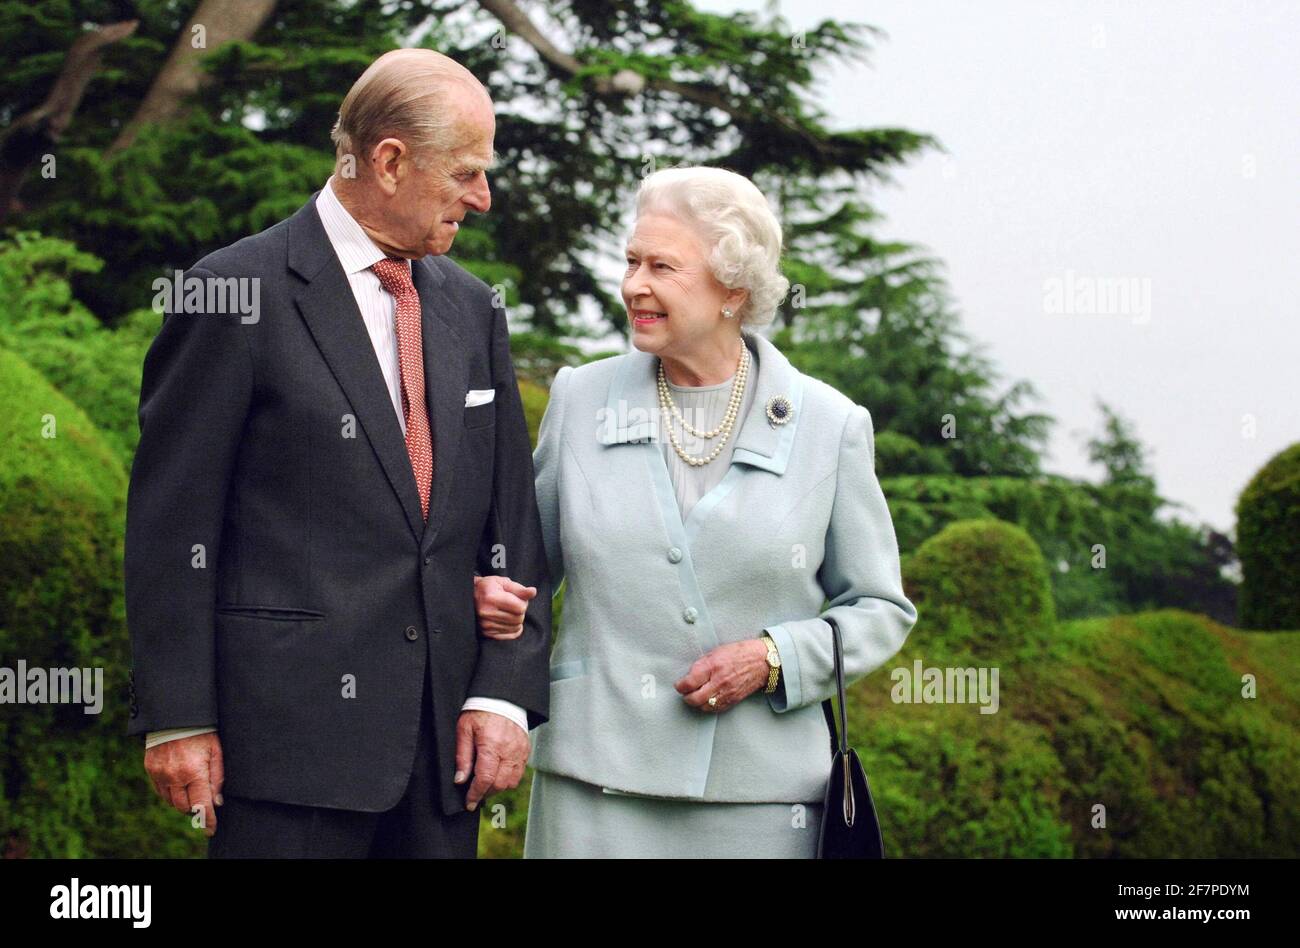 Foto del archivo fechada el 18/11/07 de la reina Isabel II y el duque de Edimburgo en Broadlands que marca su aniversario de bodas de diamantes . XXXX. Foto de stock